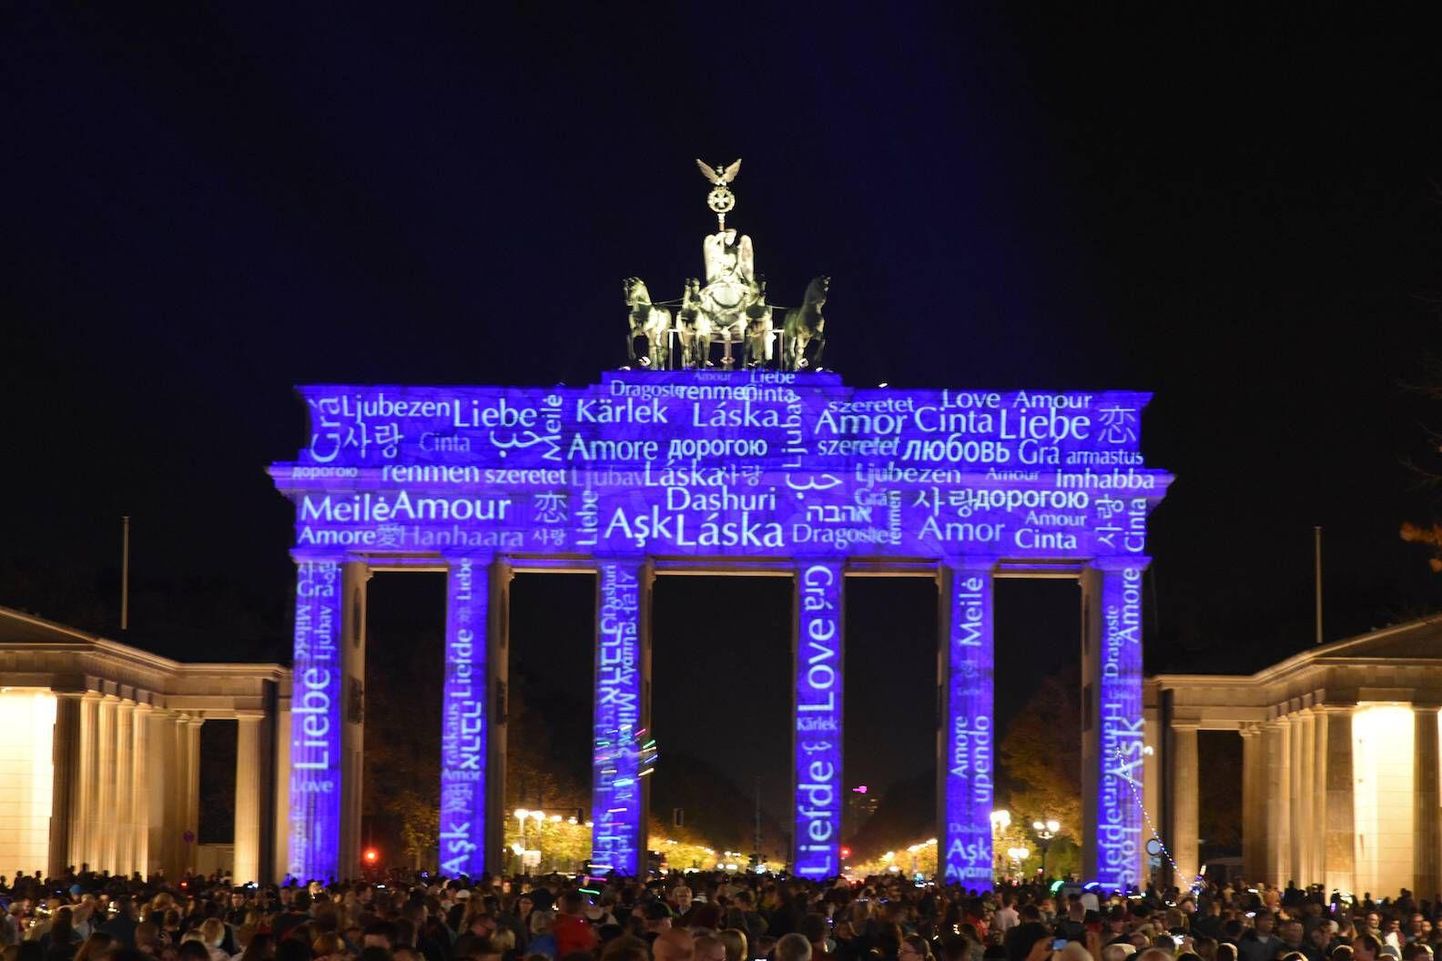 Berliini valgusfestival on üks maailma tuntumaid ja seda peetakse iga aasta oktoobris.